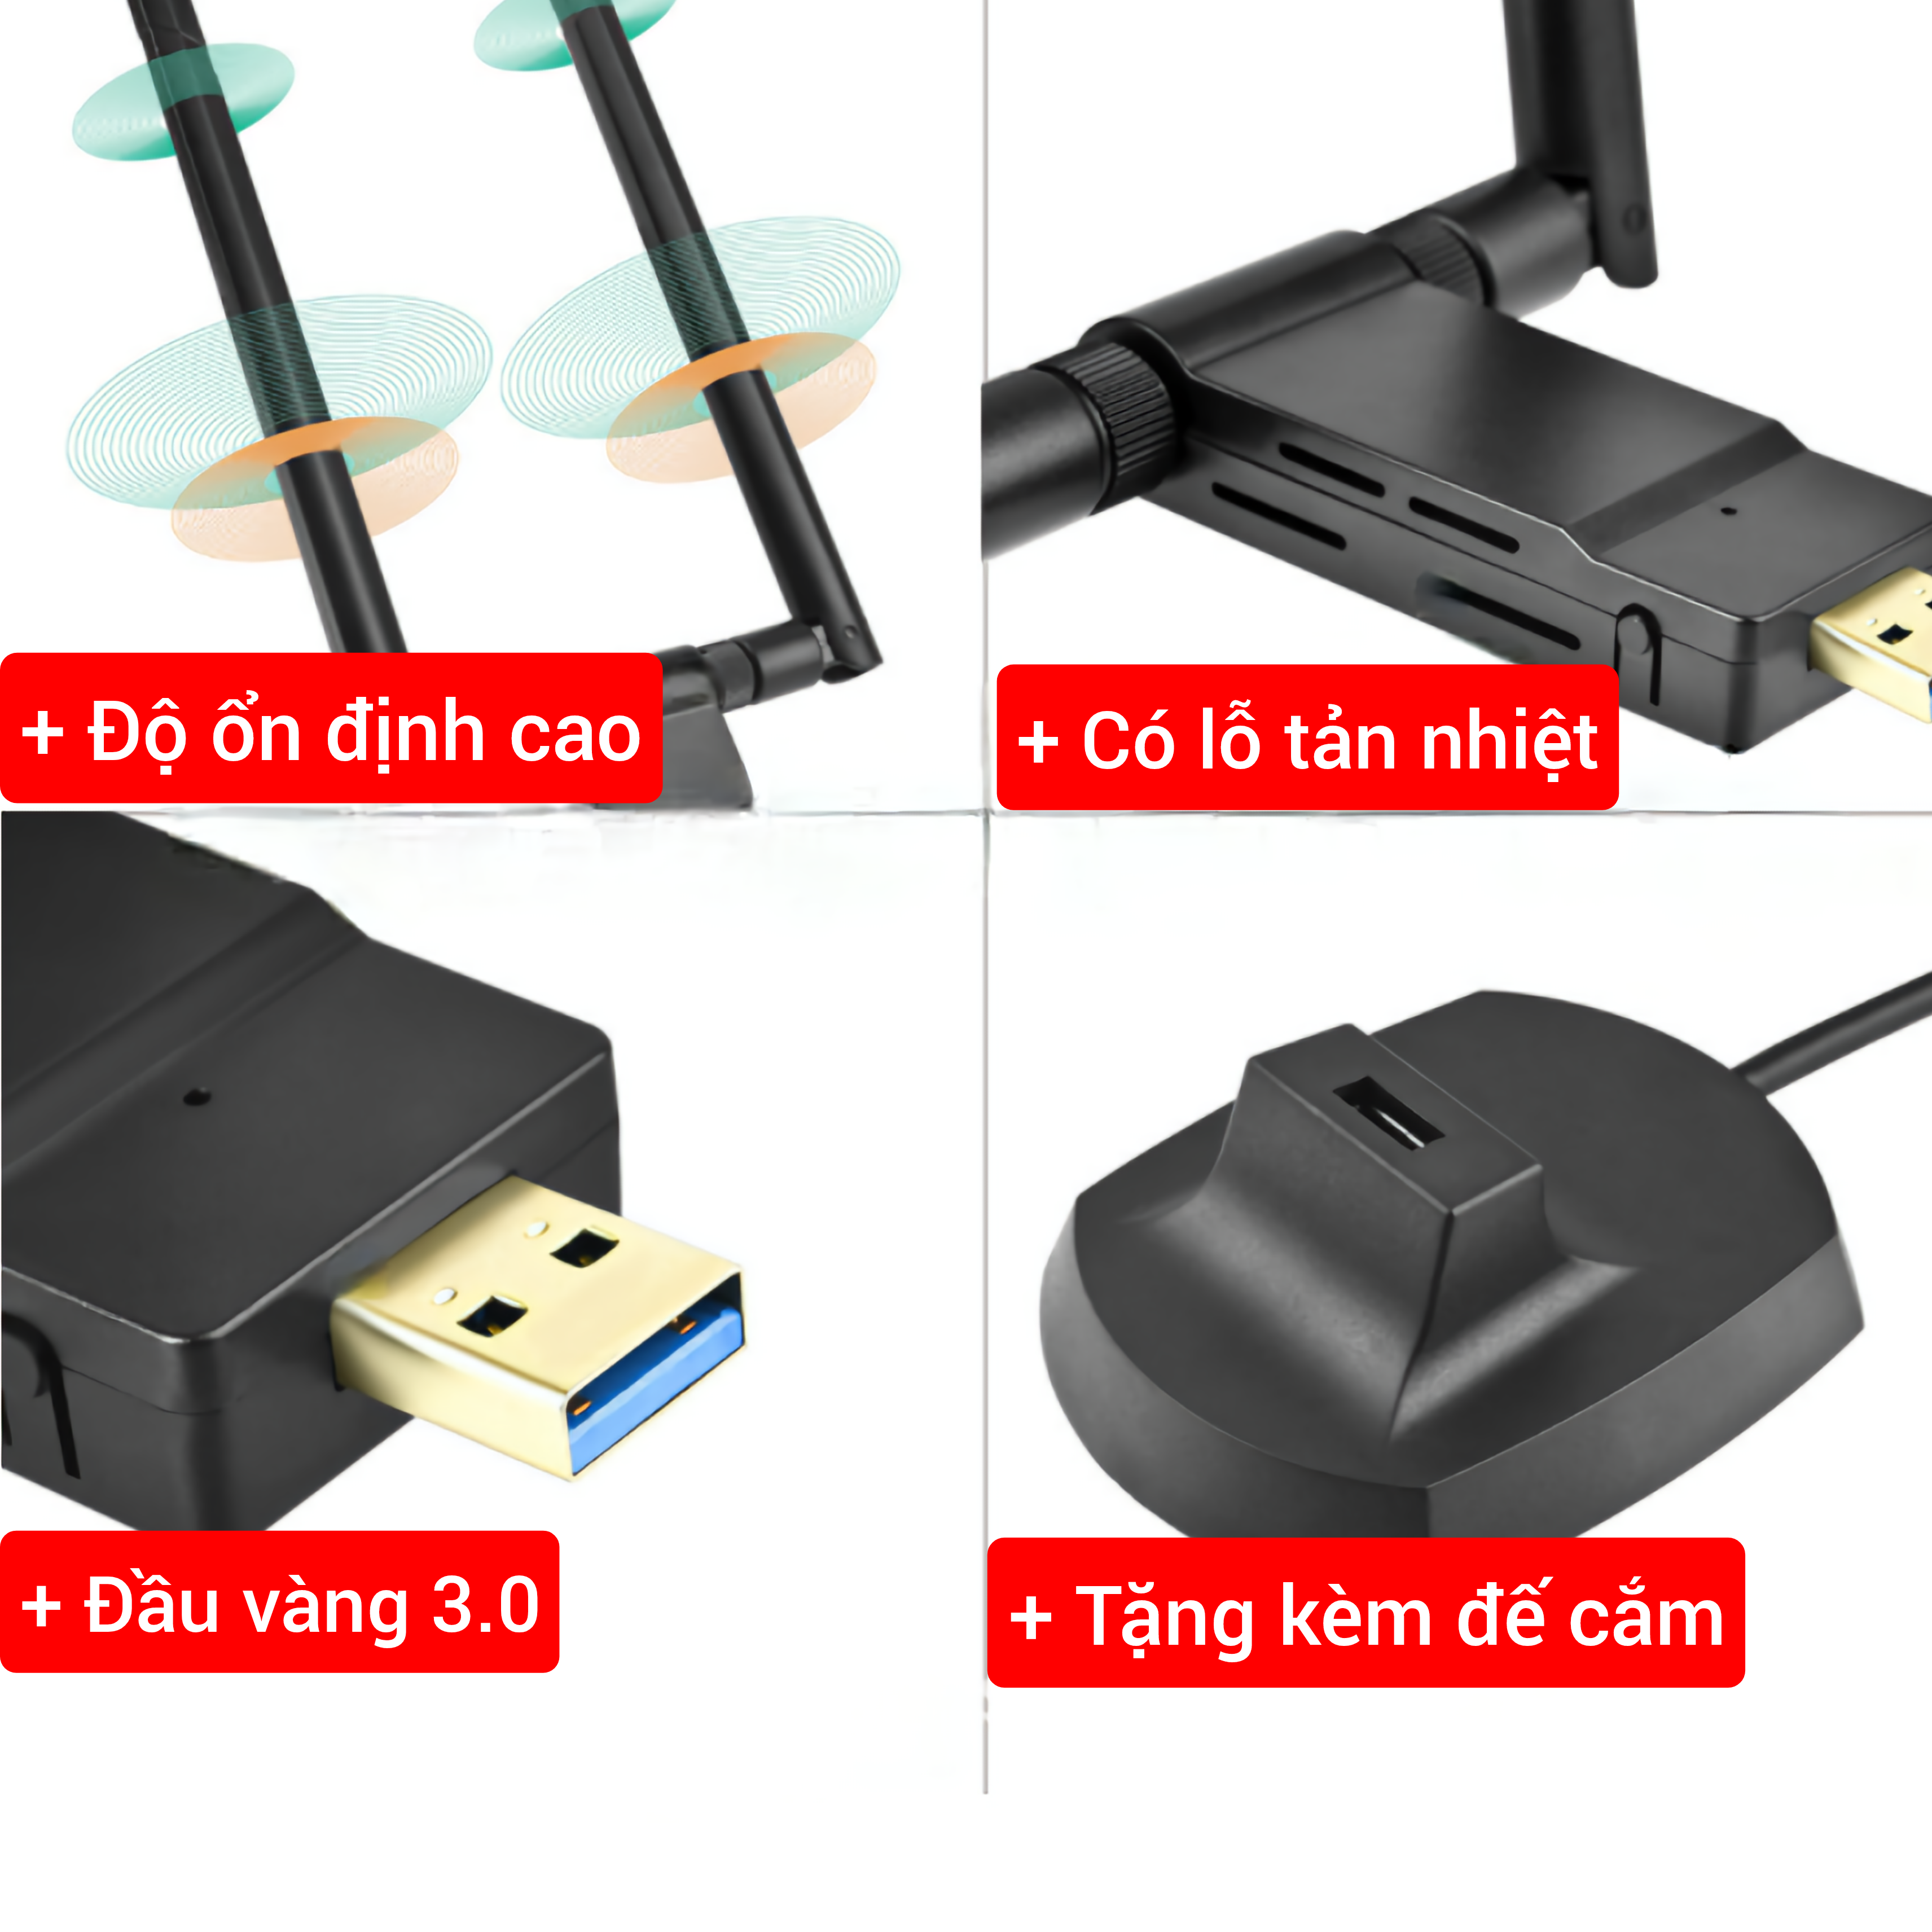 Nâng cấp WiFi 5G dễ dàng với USB WIFI 3.0 siêu tốc 1900Mbps bắt 5GHz cho máy bàn PC laptop - Nota 1900Mb Anten Đôi Pro